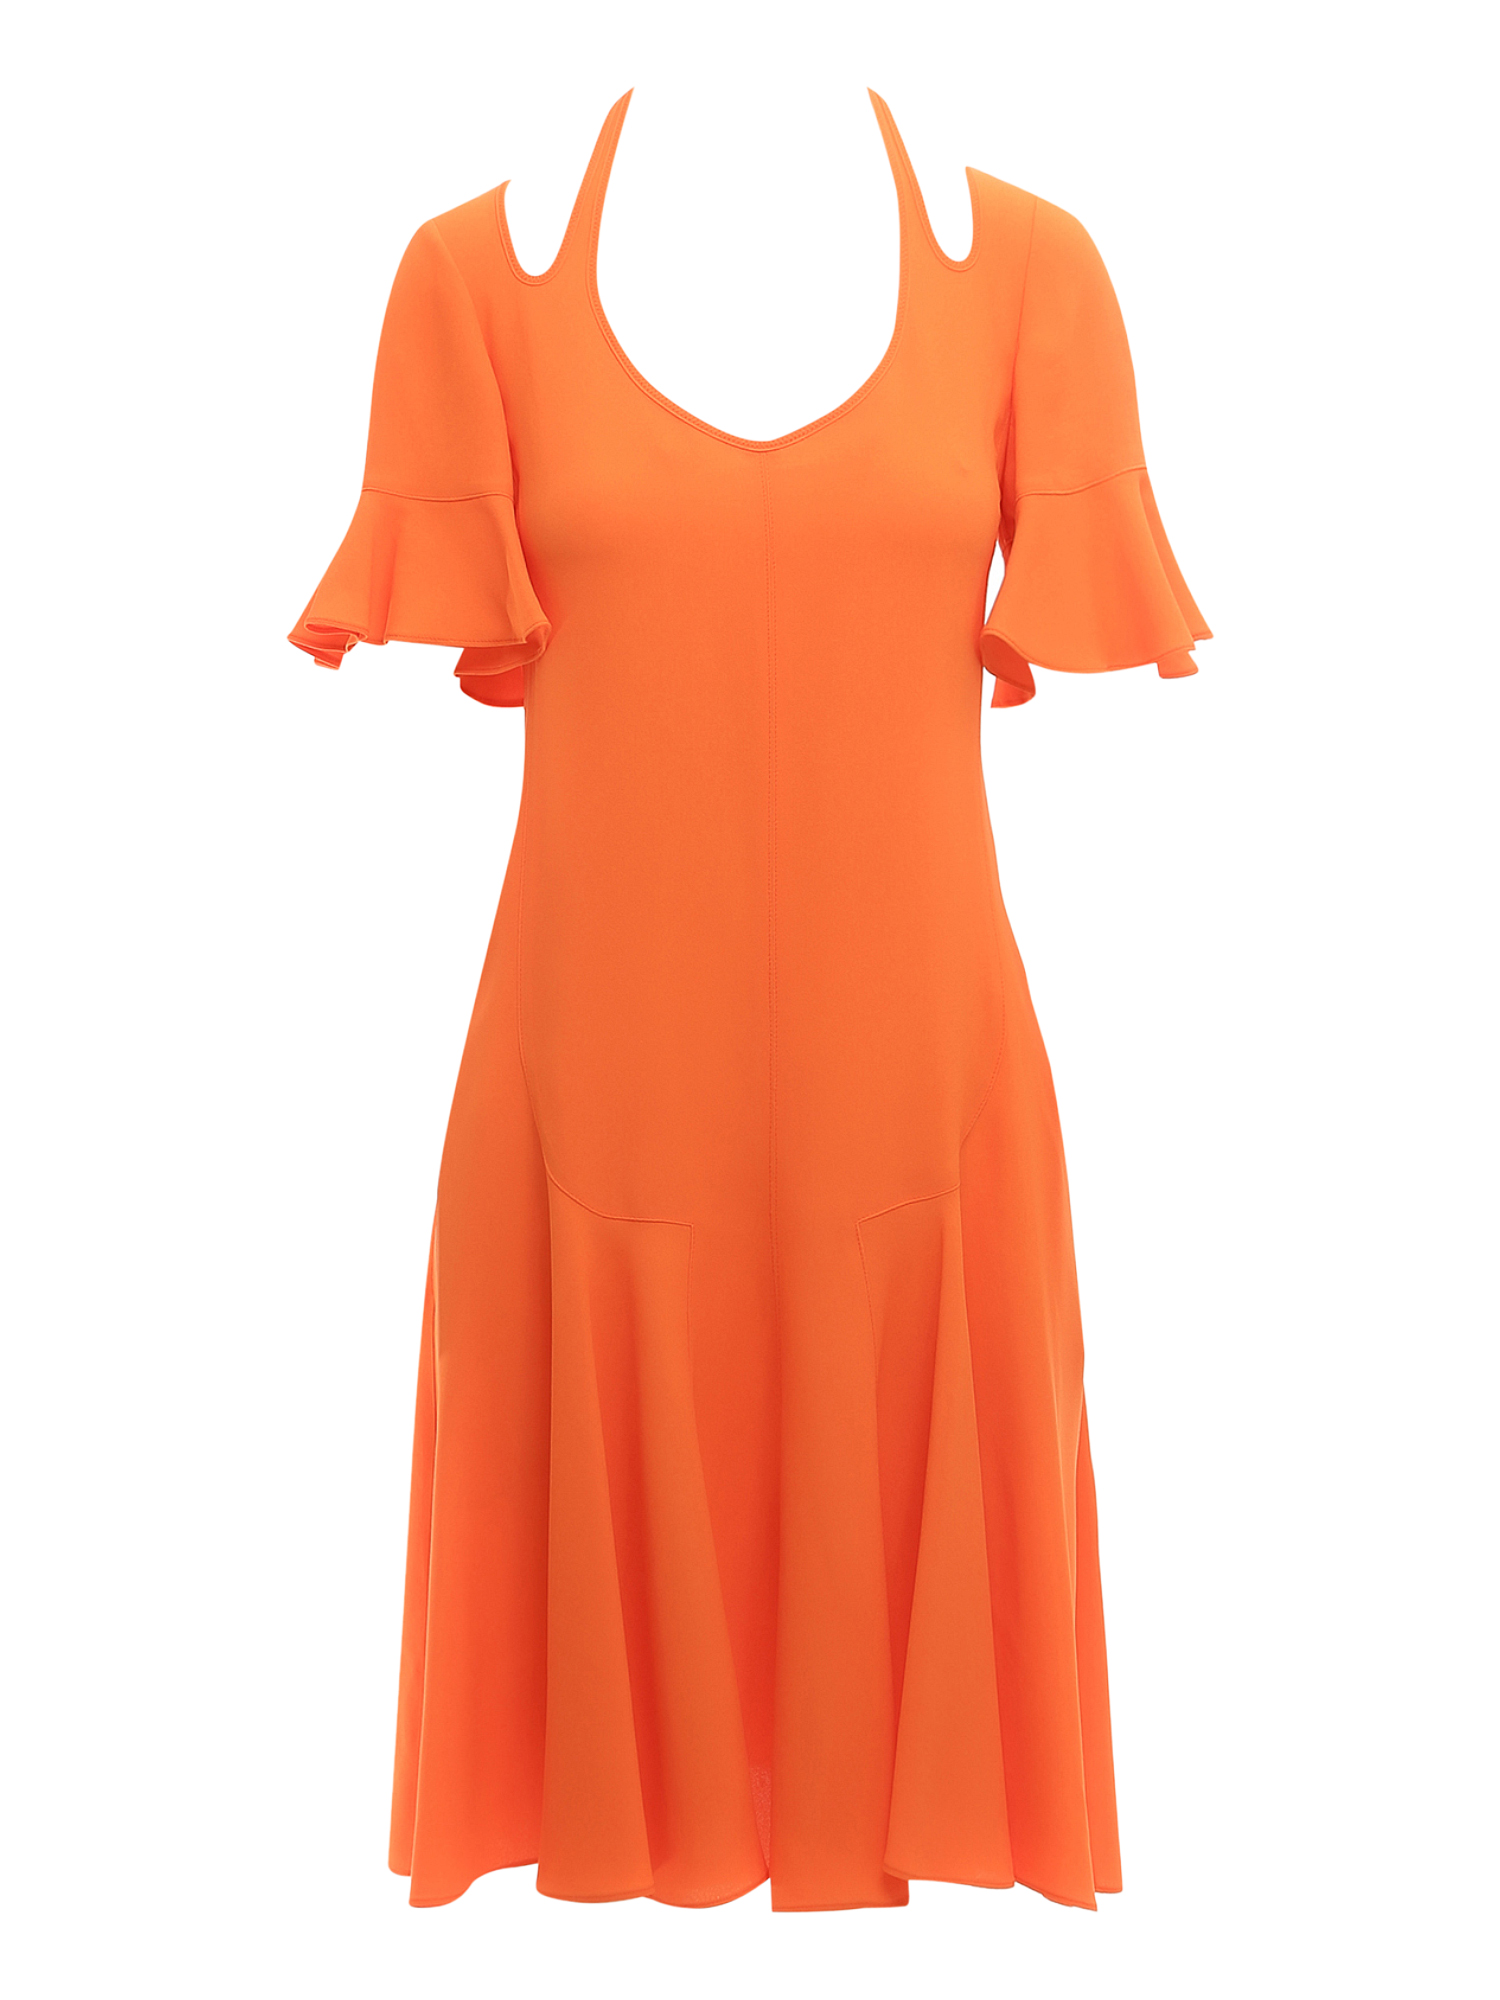 Women's Dresses - Stella McCartney - In Orange Synthetic Fibers